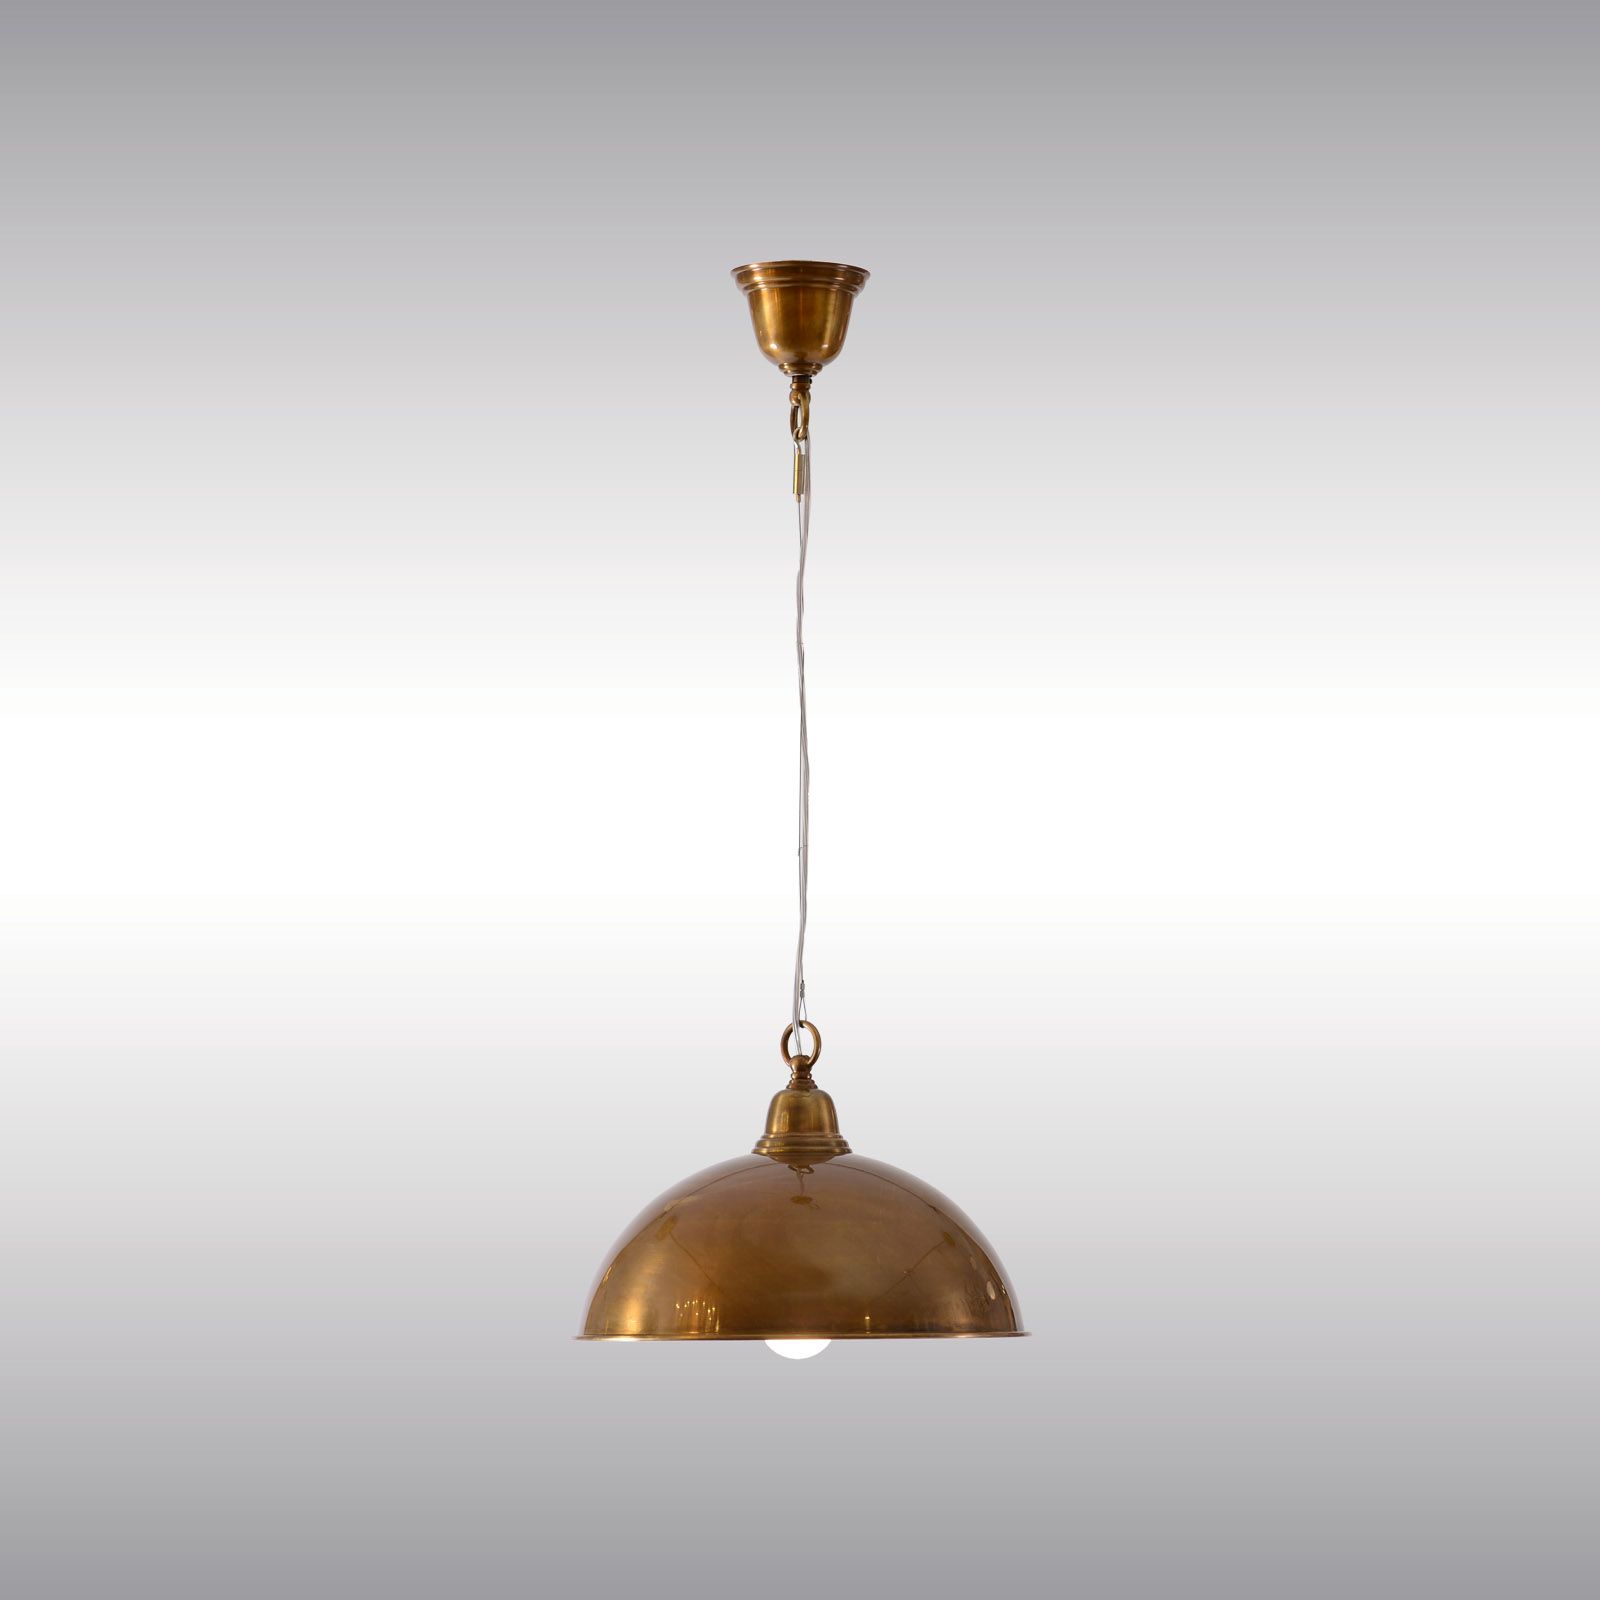 WOKA LAMPS VIENNA - OrderNr.: 21524|Looshaus Comptoir Pendant lamp 35 - Design: Adolf Loos